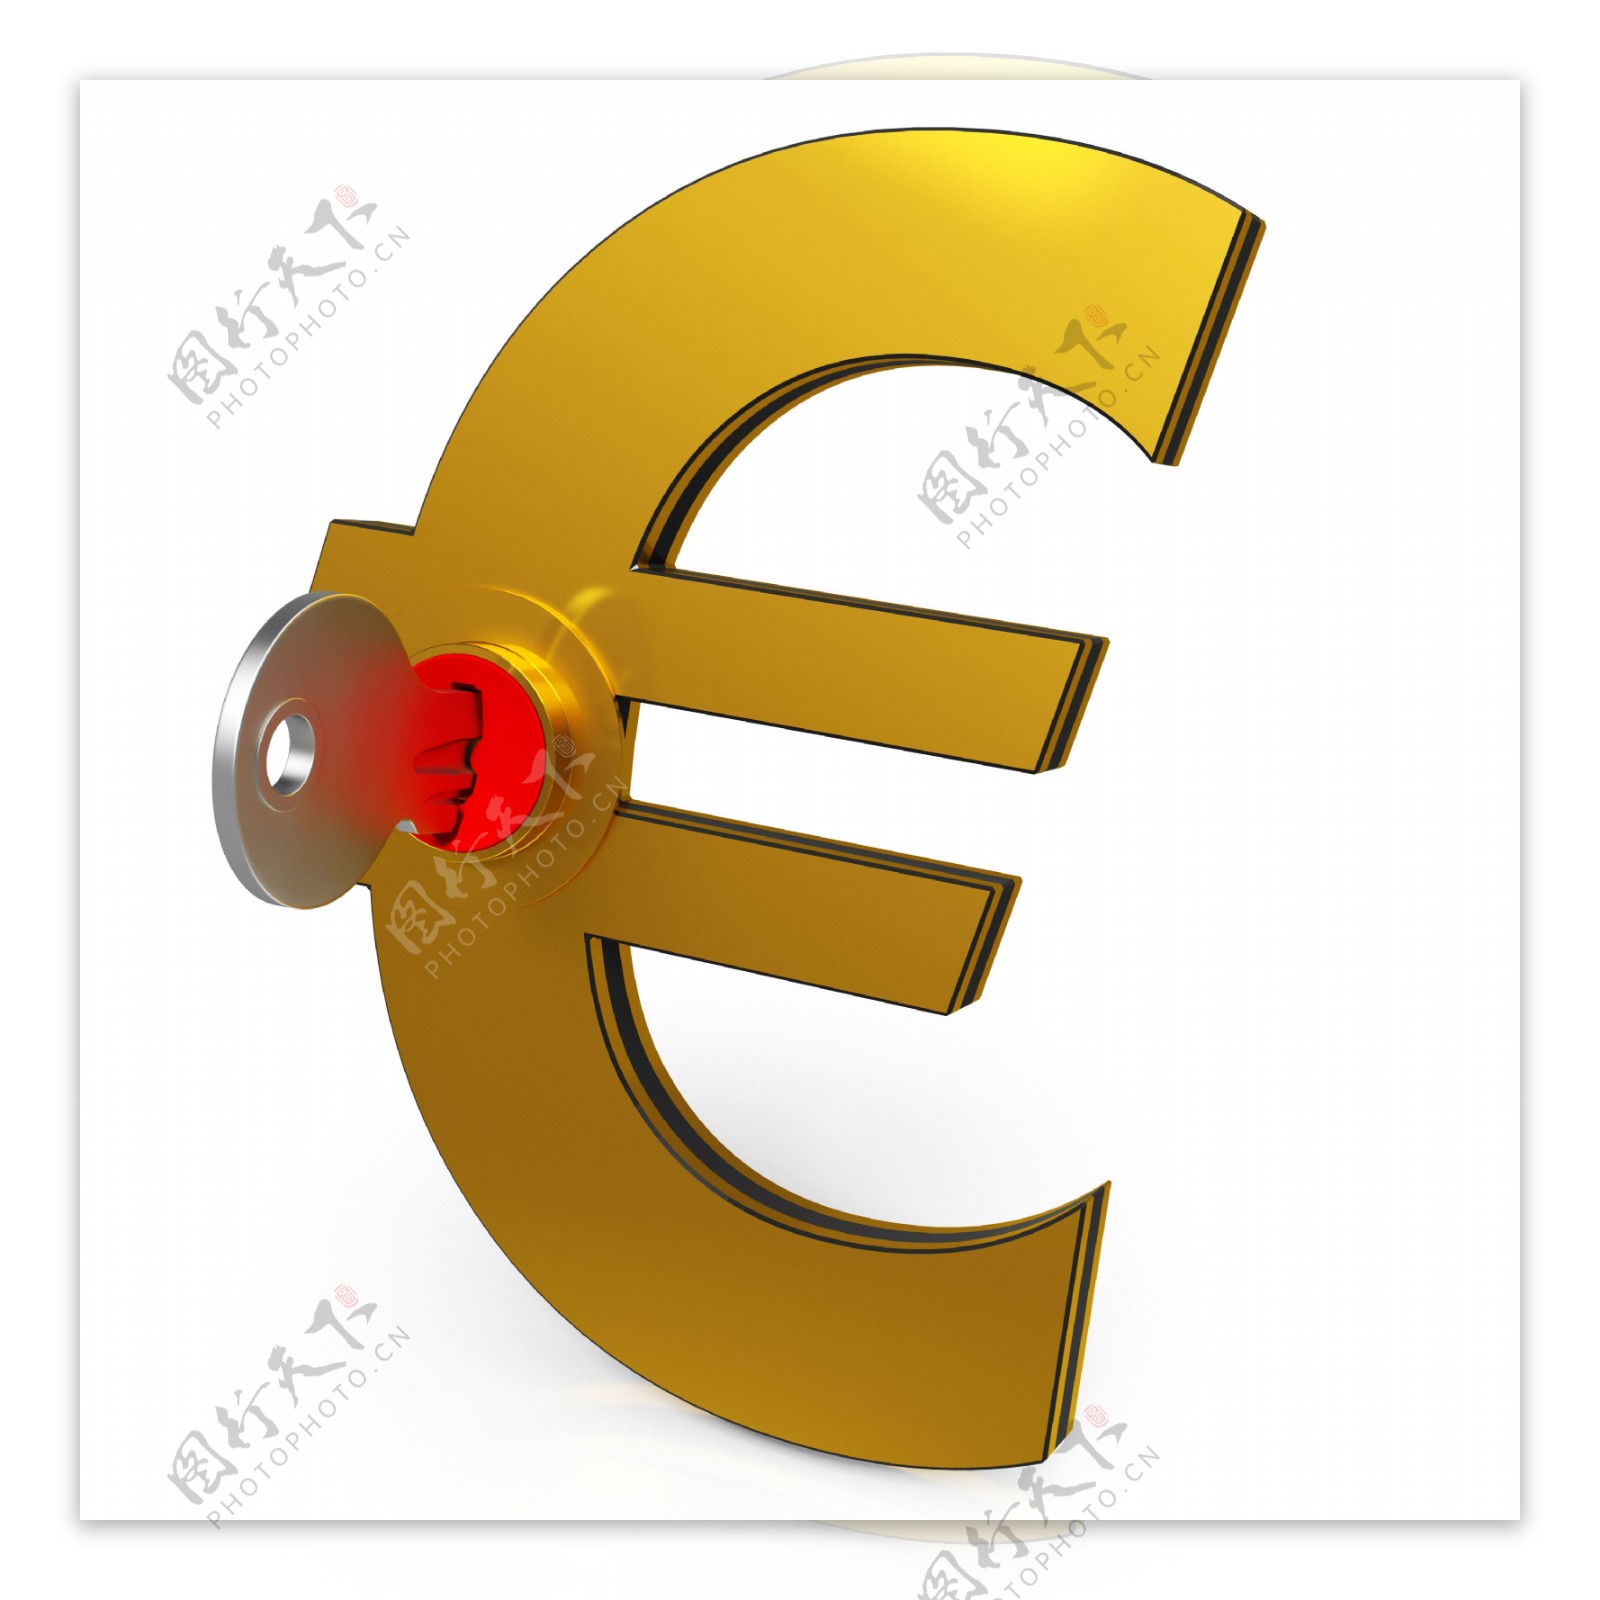 欧元钥匙显示储蓄和金融